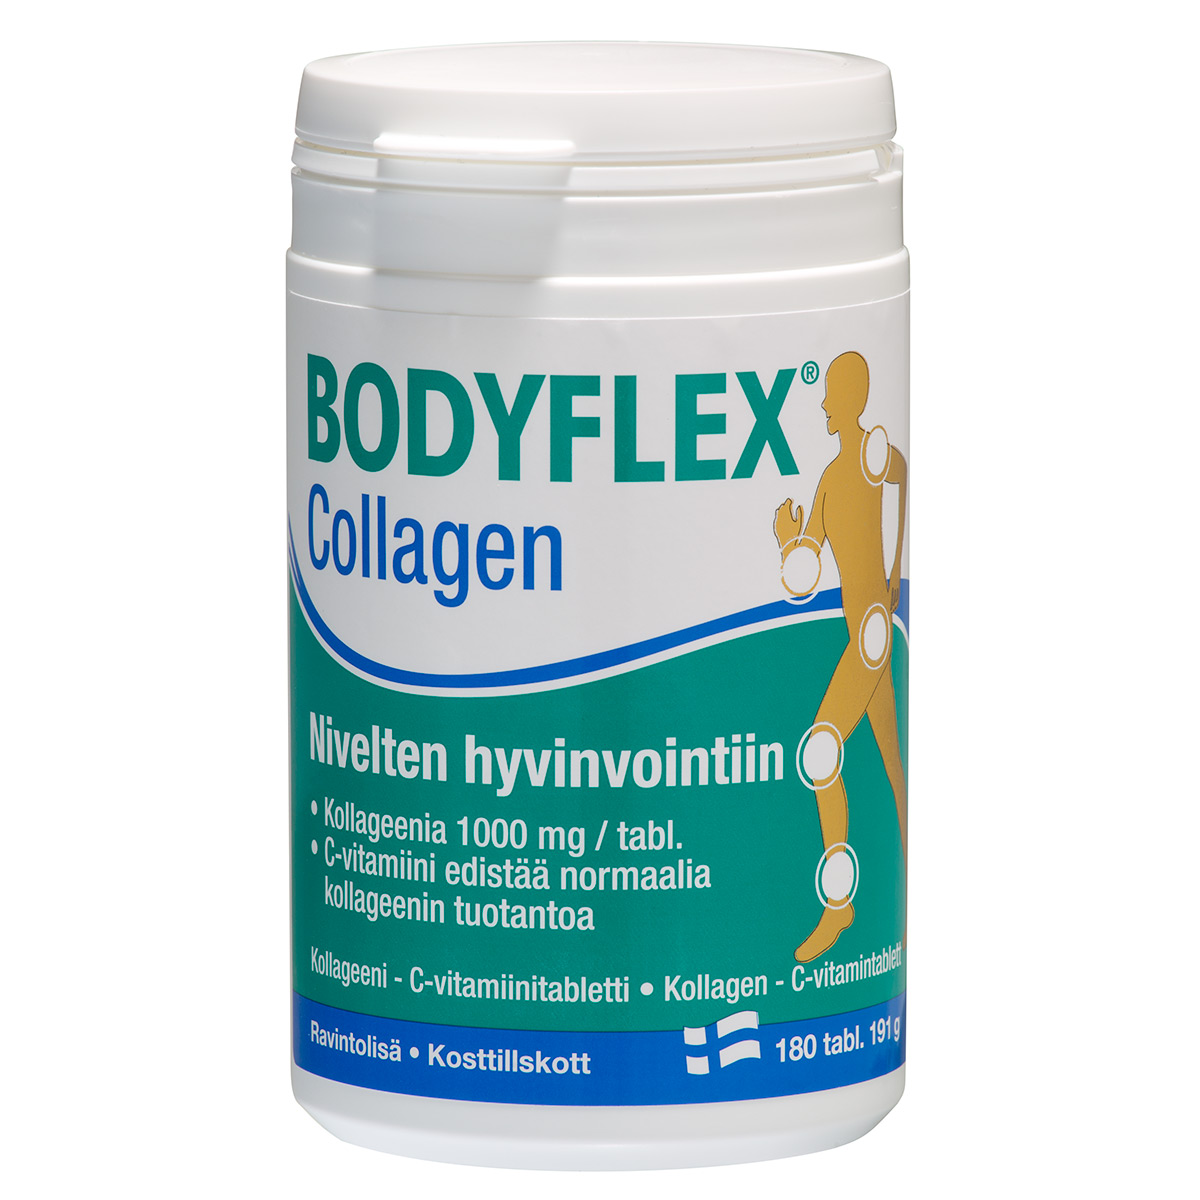 Bodyflex Collagen 180 pills/191g